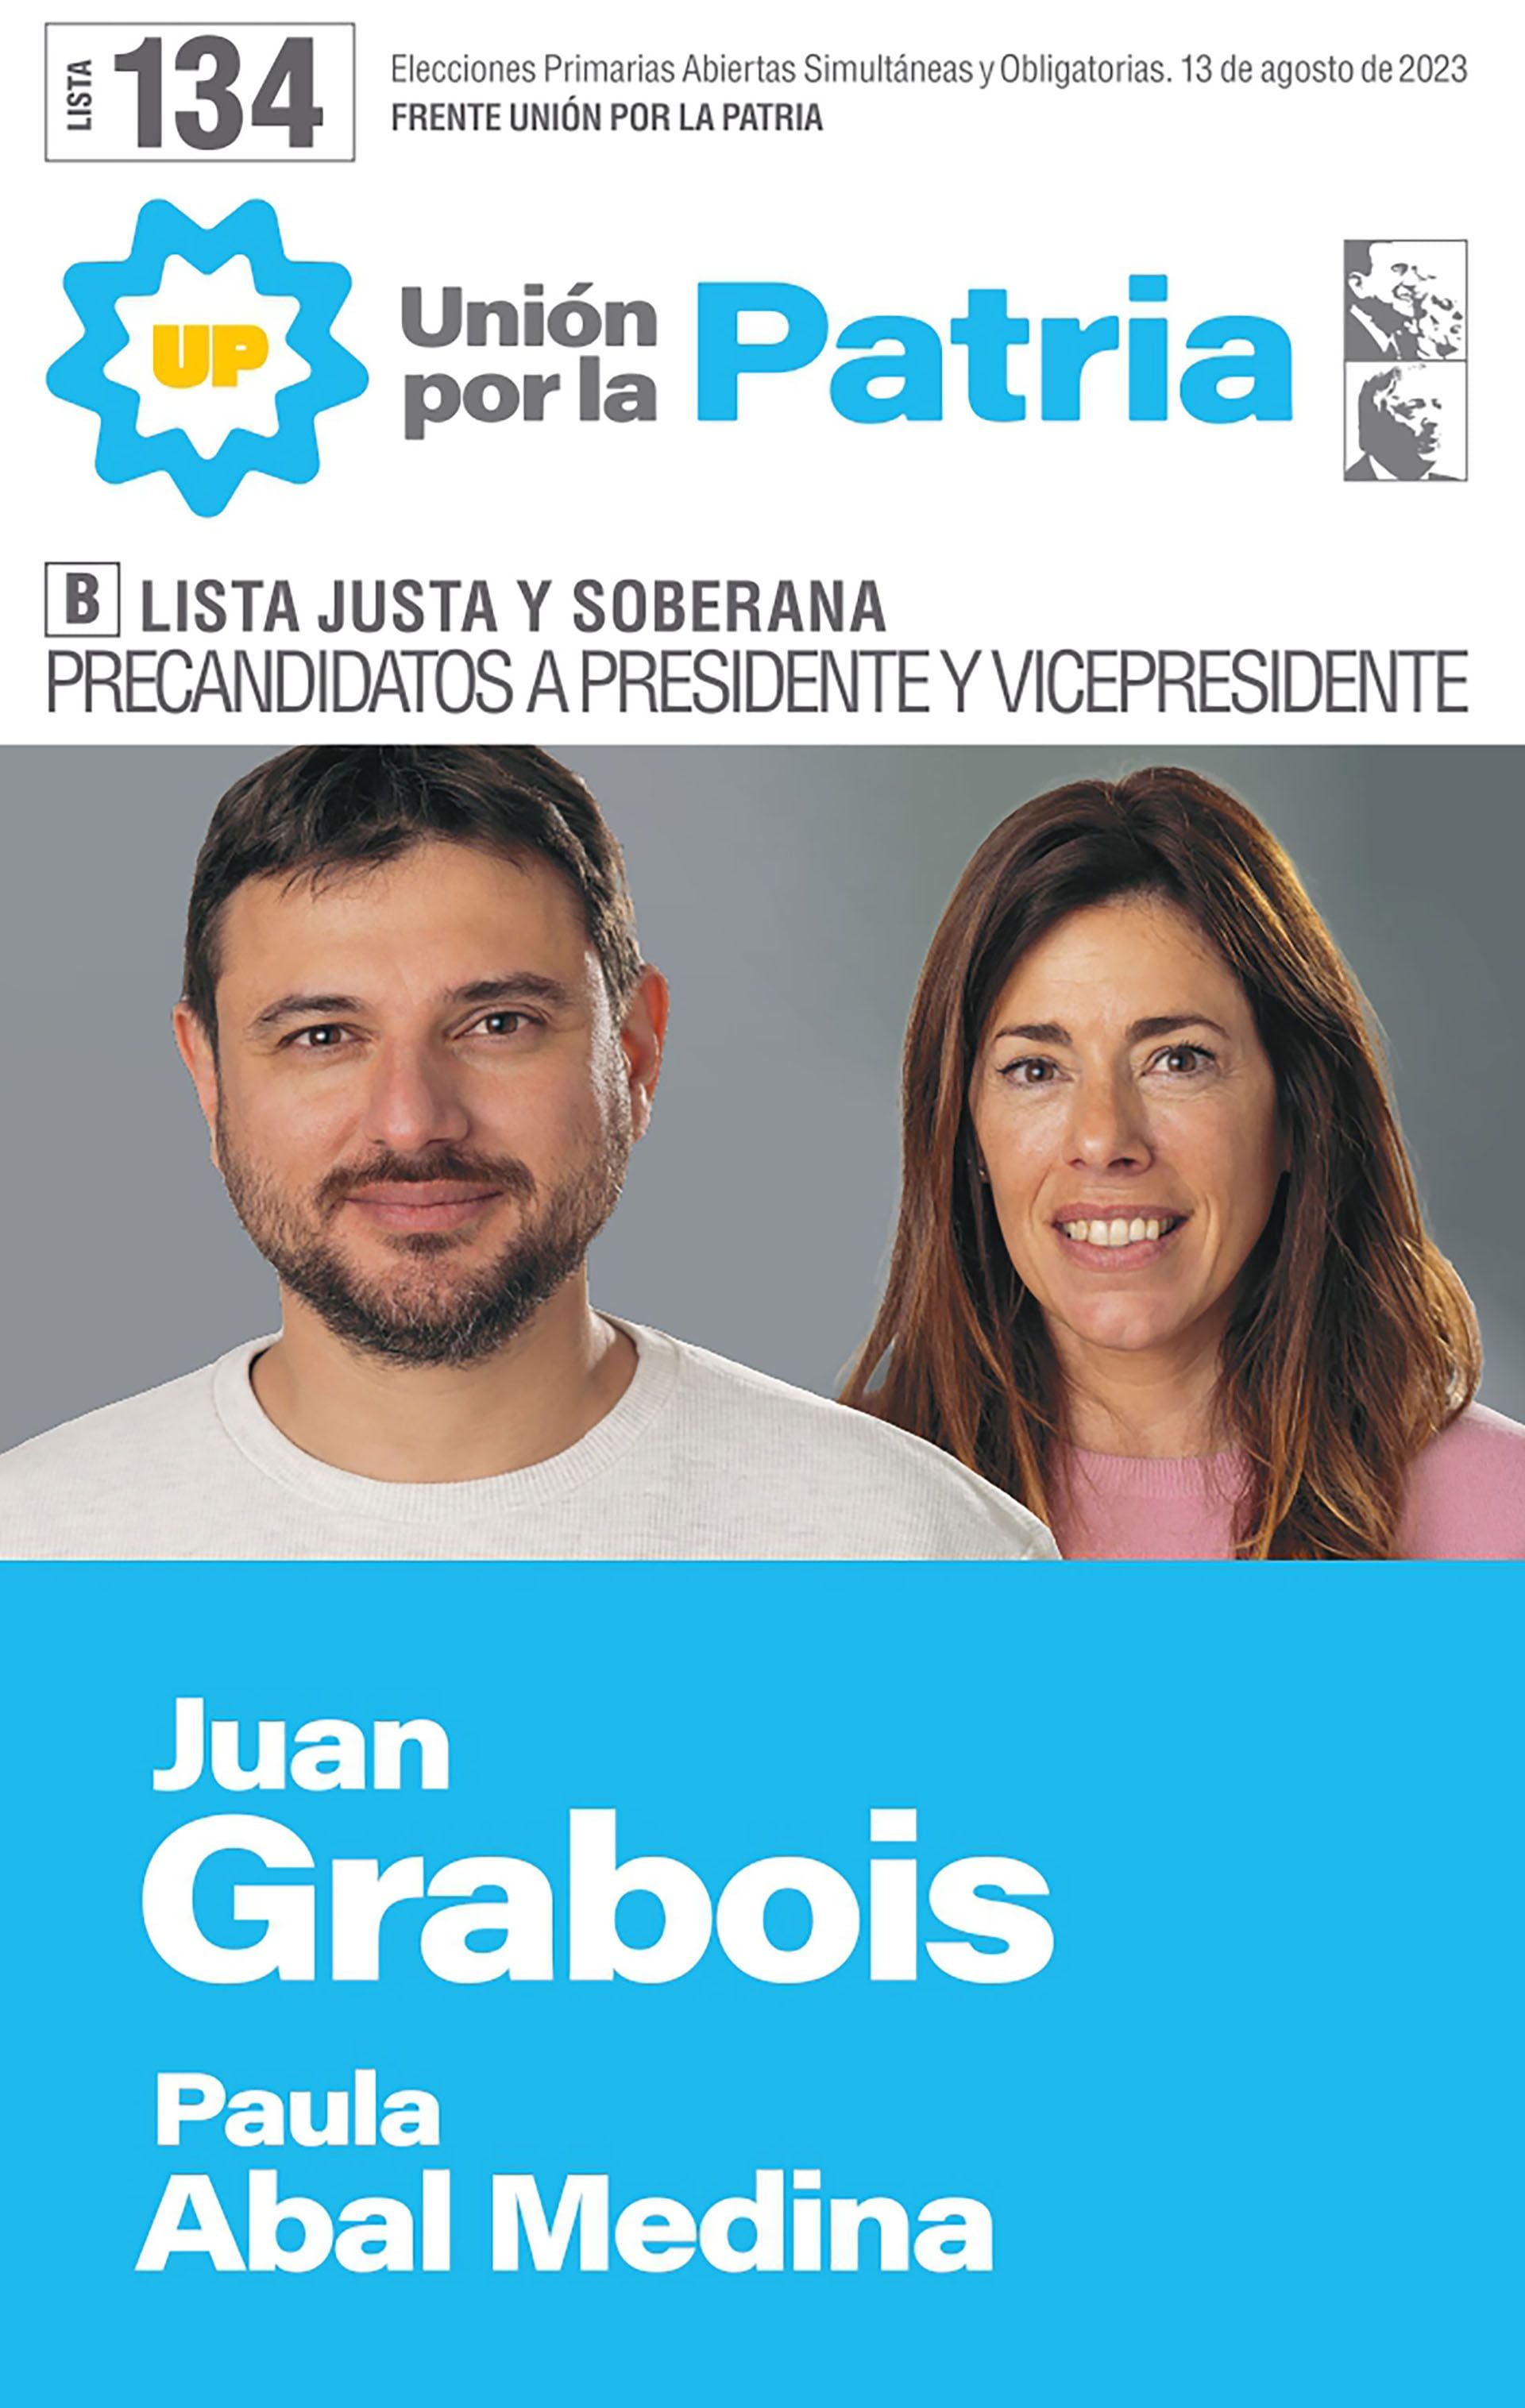 El dirigente social, Juan Grabois, encabeza una lista alternativa por Unión por la Patria 